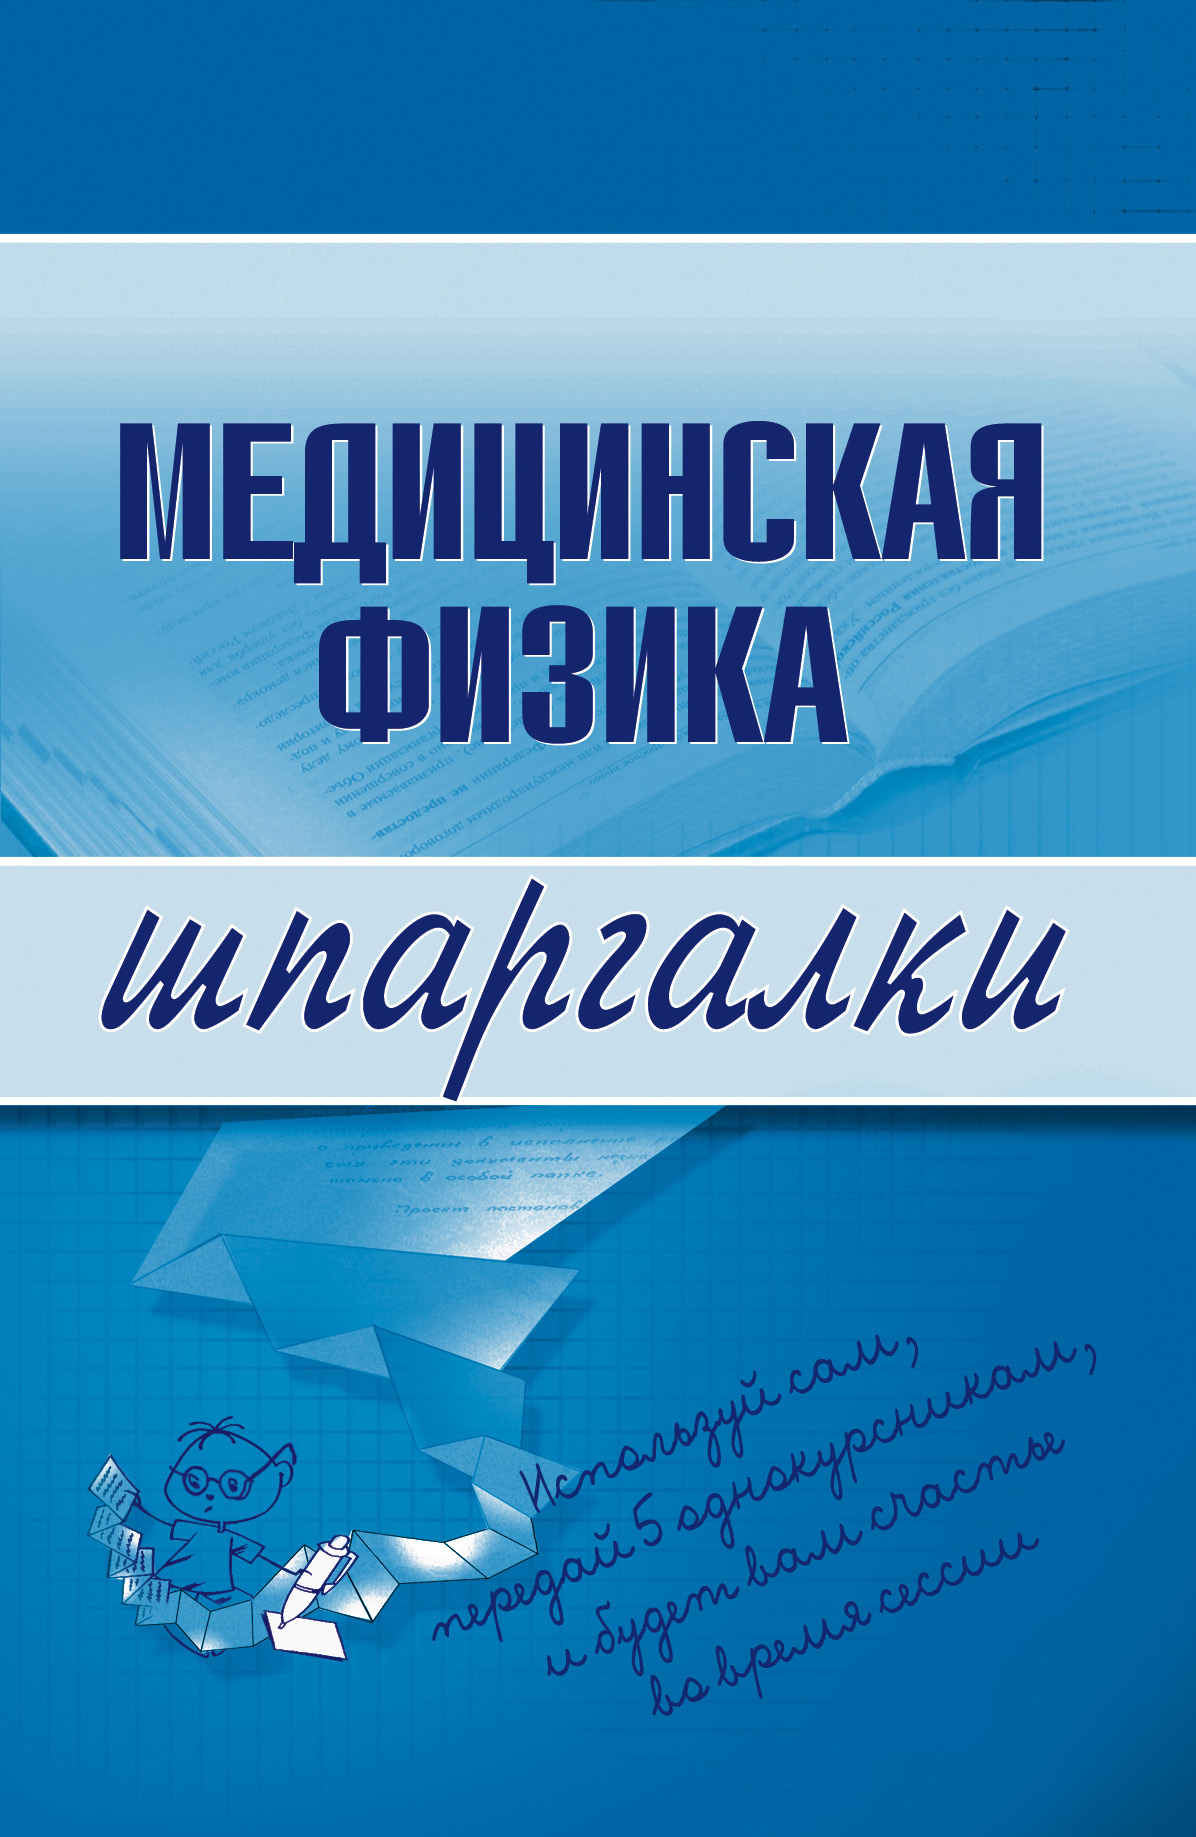 Книга Медицинская физика из серии Шпаргалки, созданная Вера Подколзина, может относится к жанру Физика, Медицина. Стоимость книги Медицинская физика  с идентификатором 180394 составляет 39.98 руб.